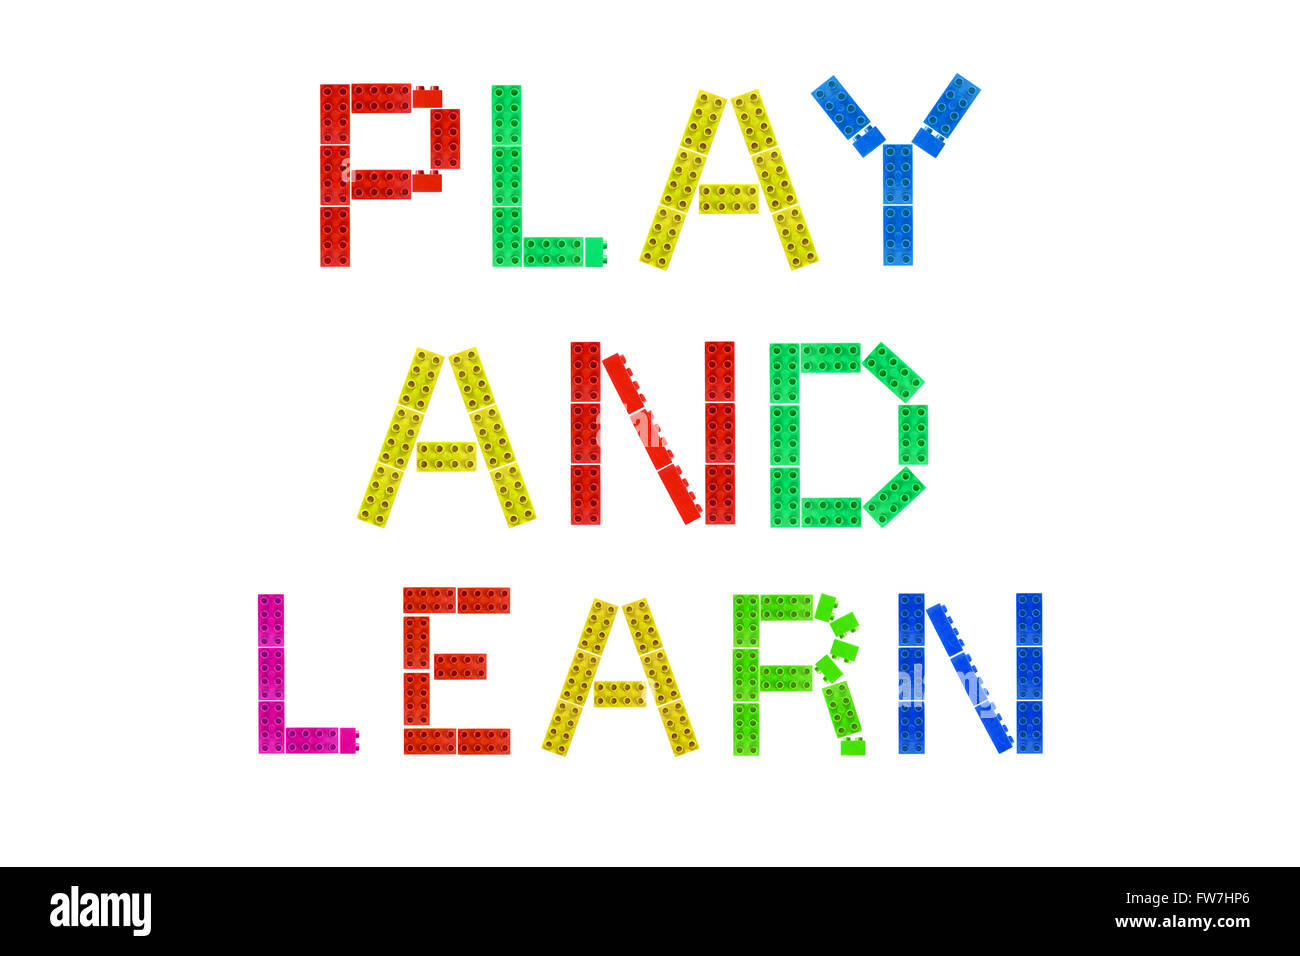 Jugar y aprender creada a partir de piezas de Lego fotografiado contra un  fondo blanco Fotografía de stock - Alamy